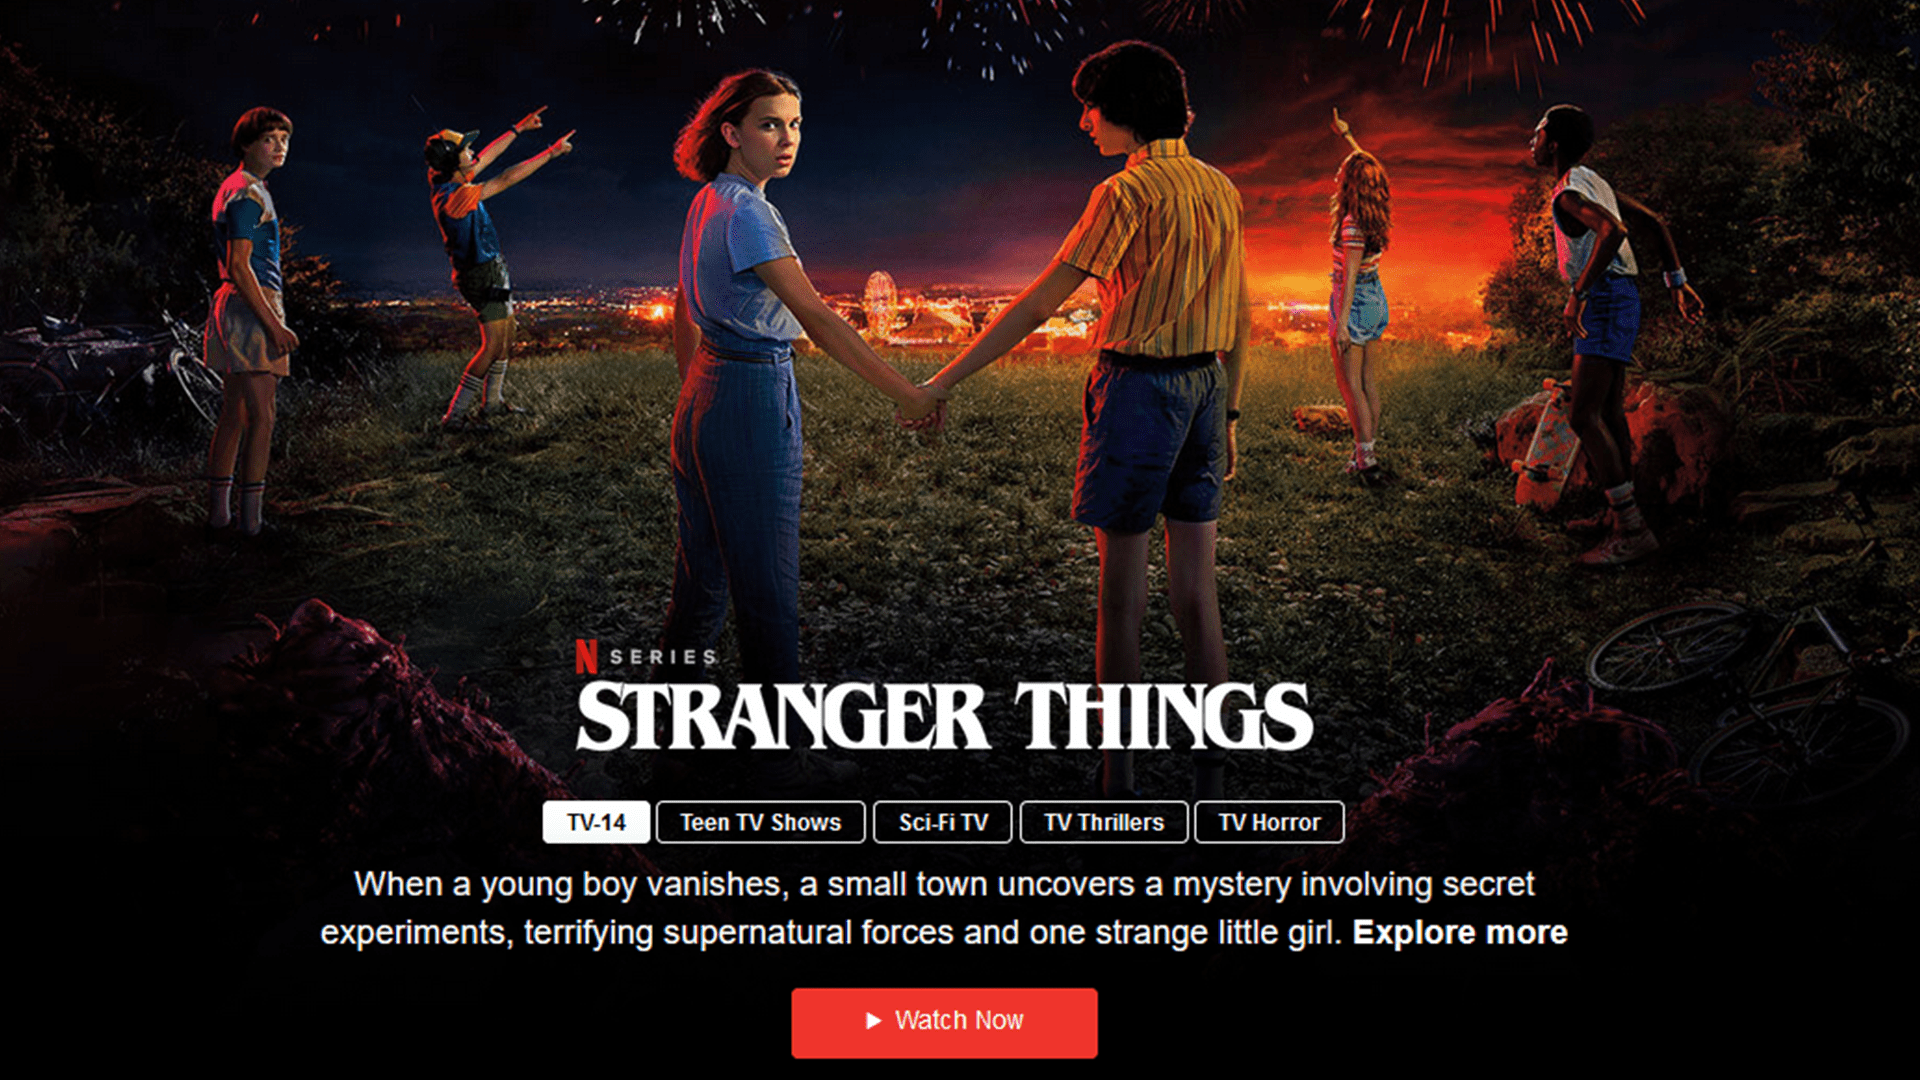 Netflix menawarkan beberapa film dan acara orisinal secara gratis, tidak perlu akun